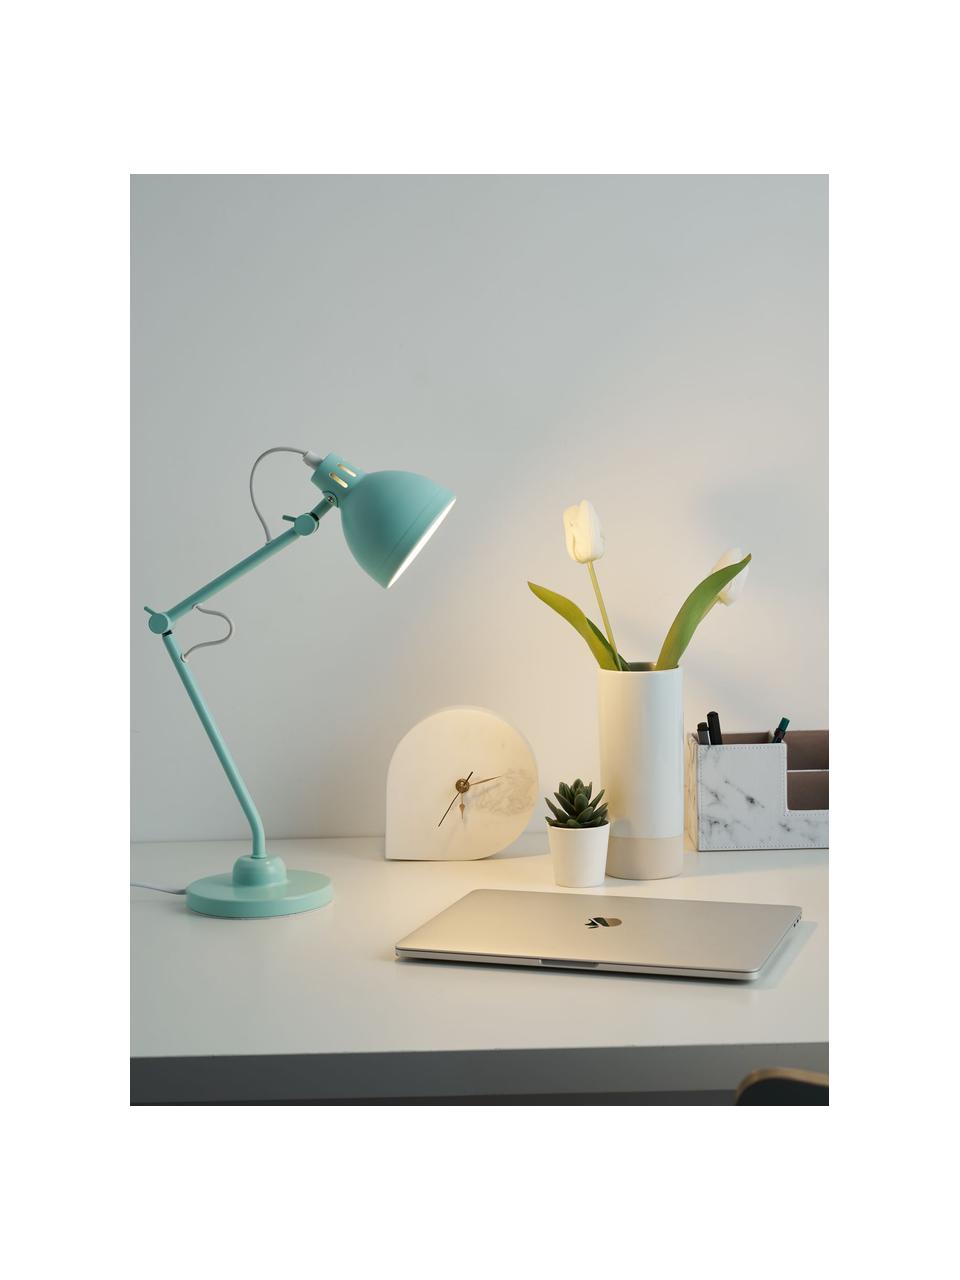 Schreibtischlampe True Buddy in Pastellgrün, Lampenschirm: Metall, beschichtet, Lampenfuß: Metall, beschichtet, Dekor: Metall, Pastellgrün, 14 x 52 cm